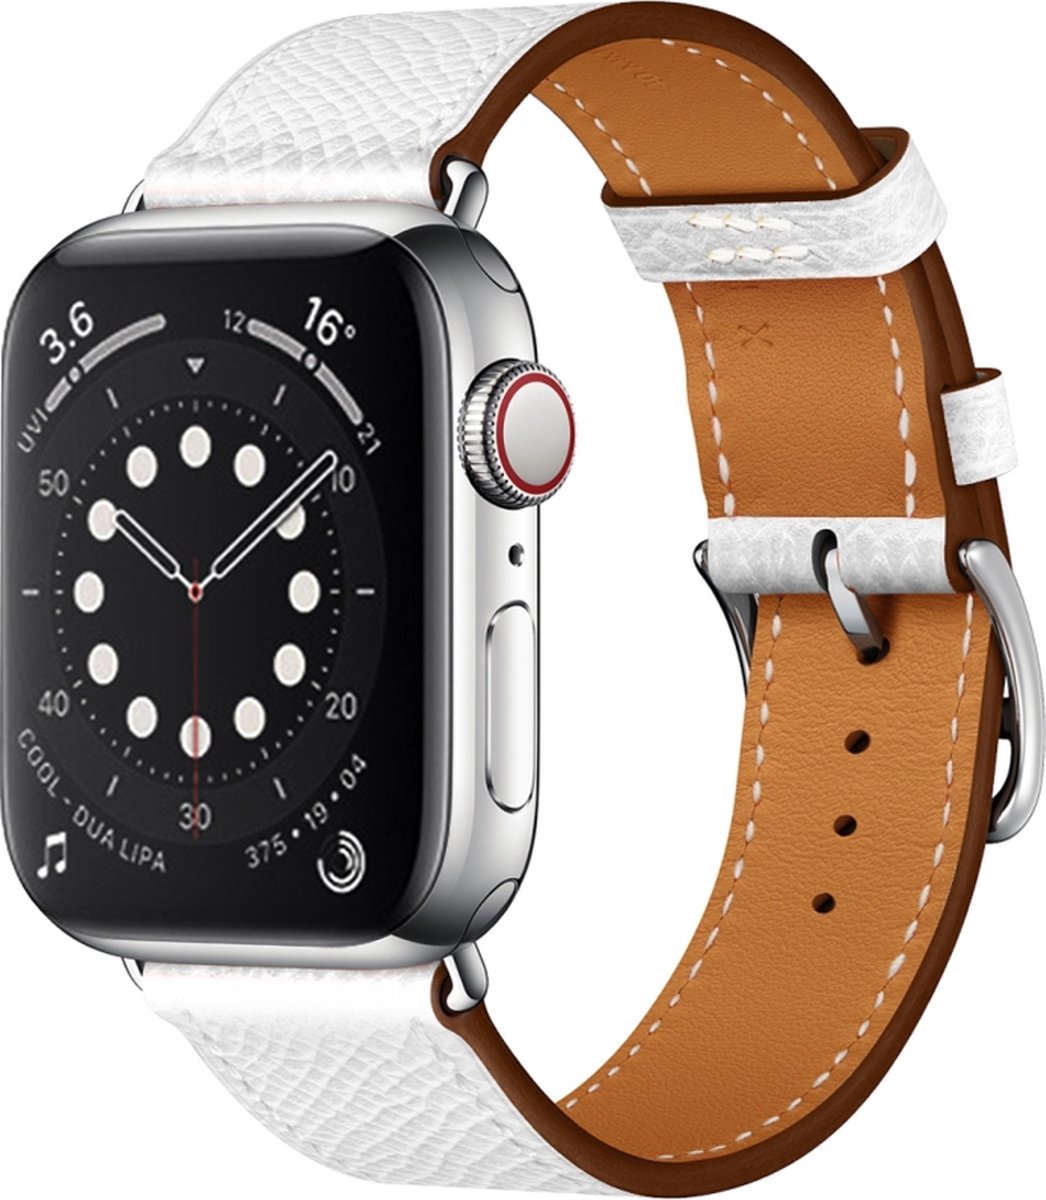 Bracelet Apple Watch Compatible - By Qubix Bracelet cuir - Marron -  Convient pour